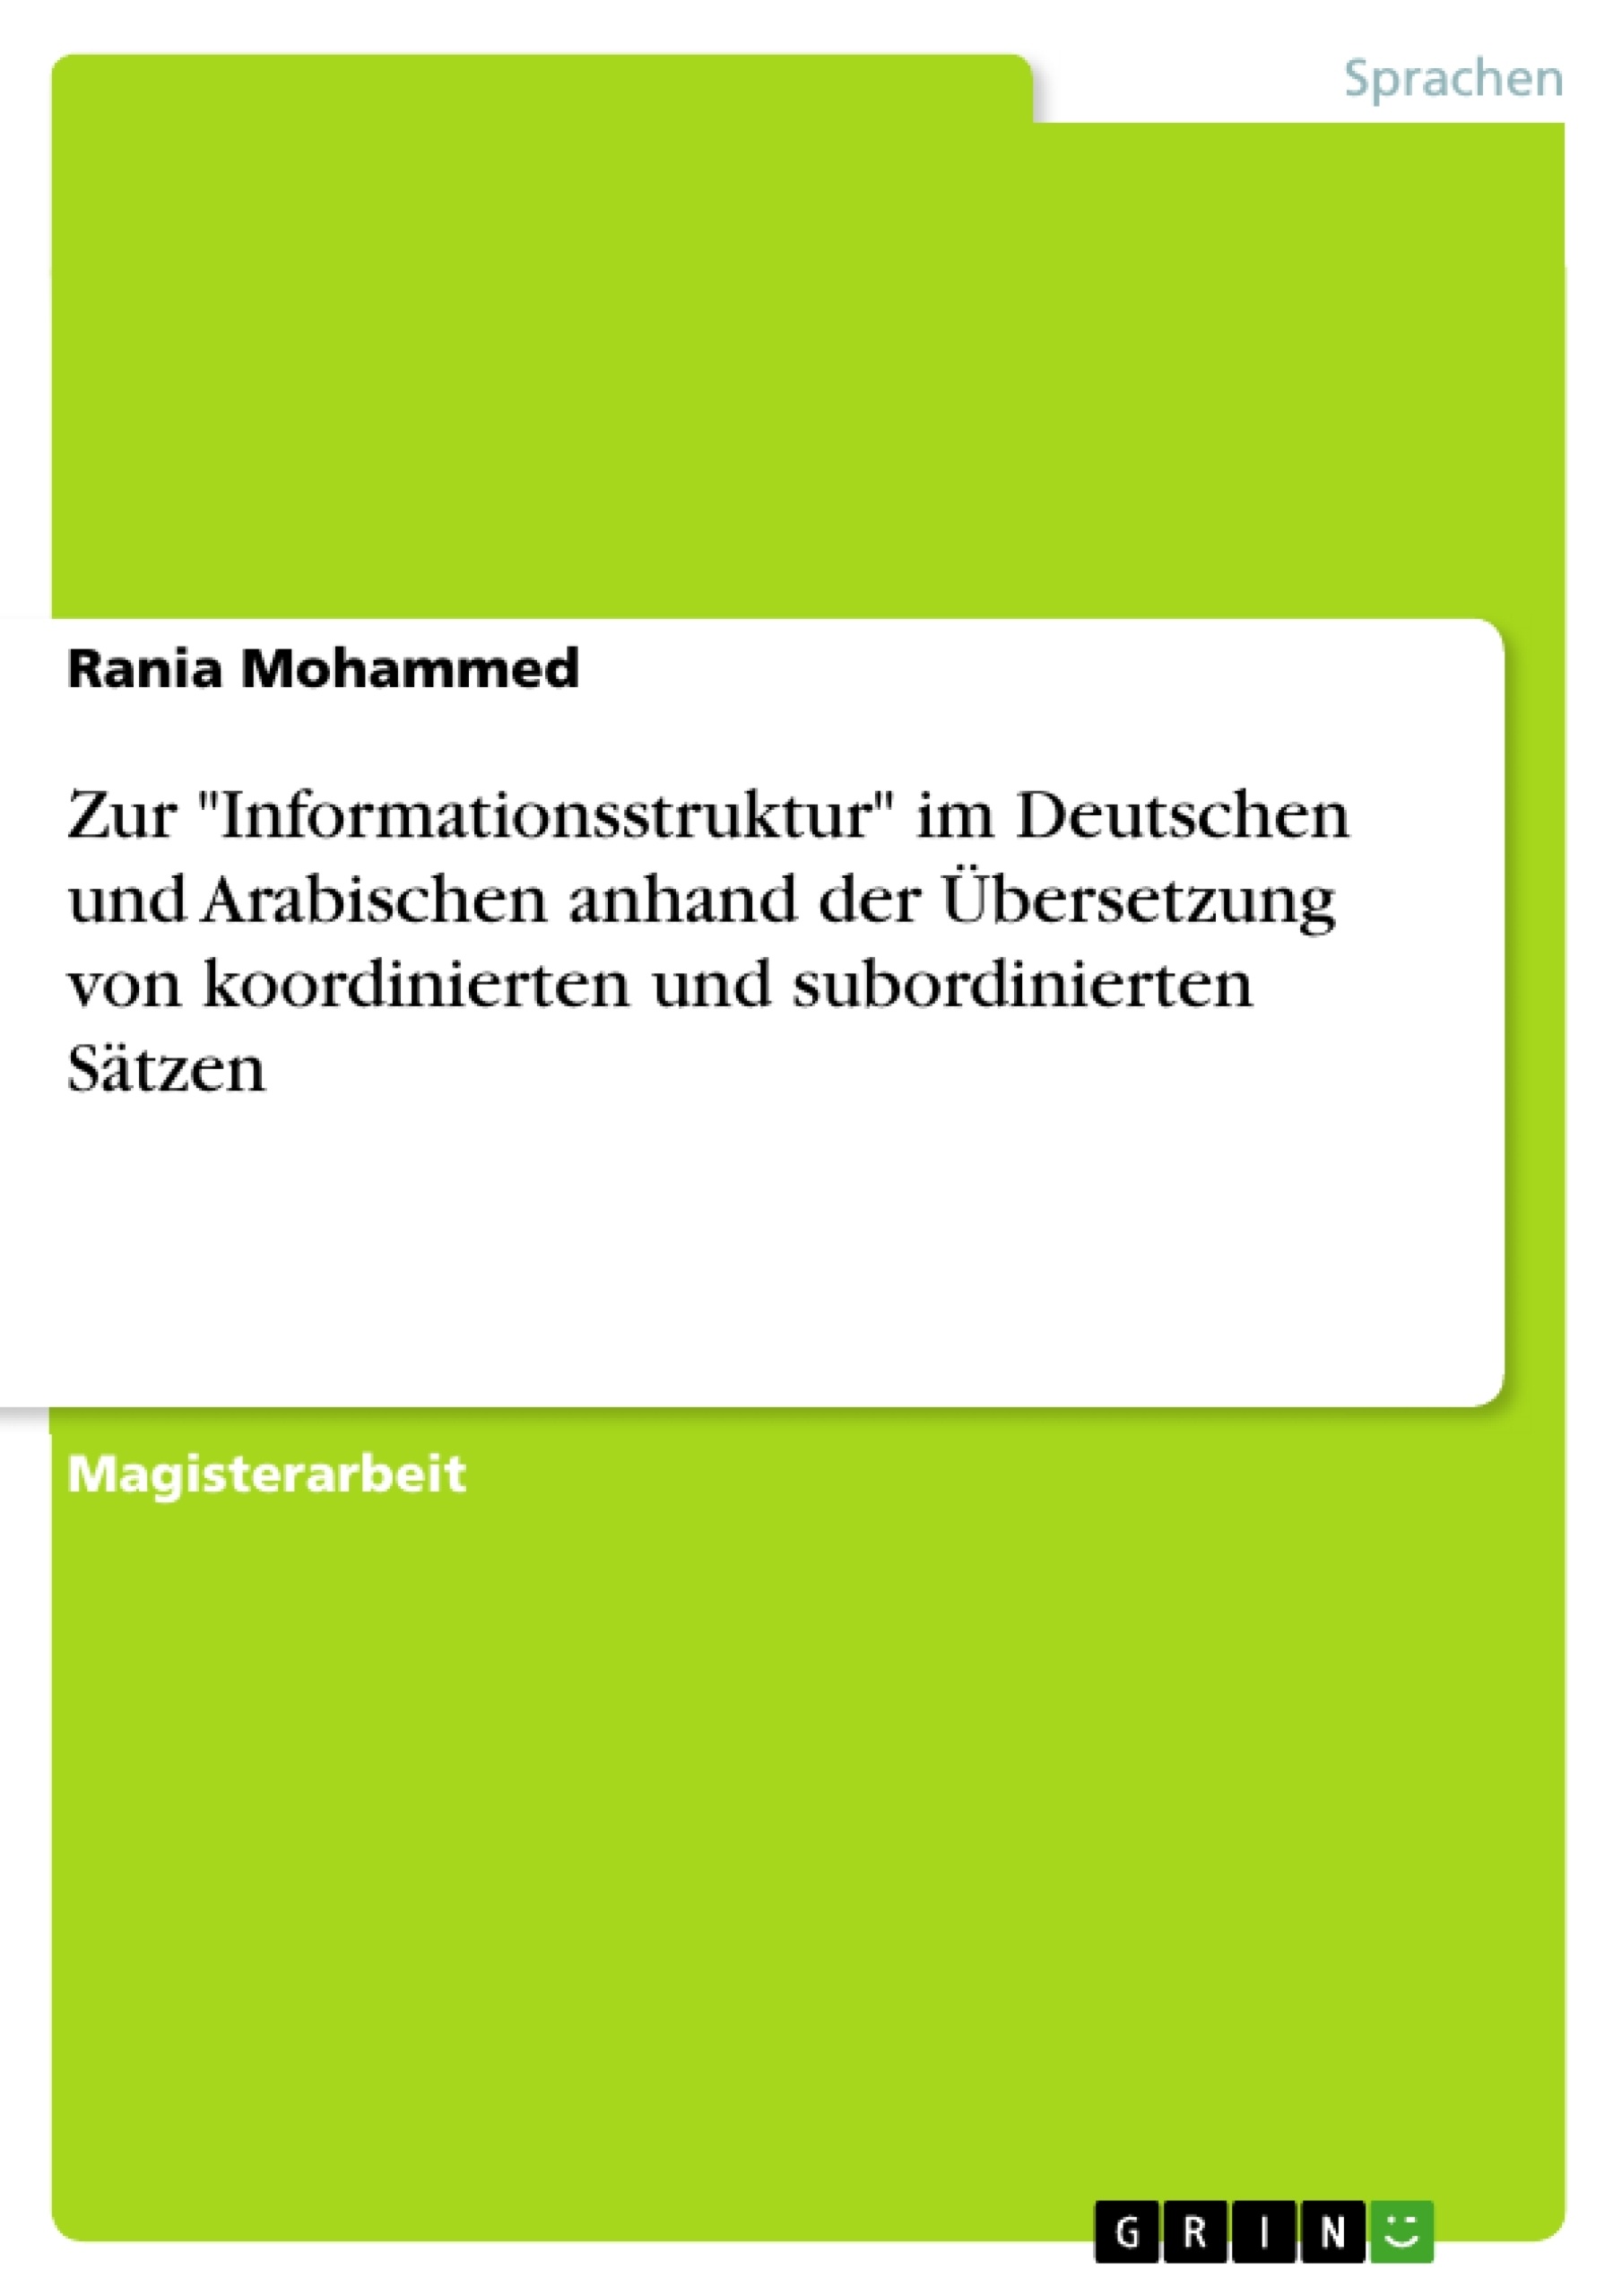 Título: Zur "Informationsstruktur" im Deutschen und Arabischen anhand der Übersetzung von 
koordinierten und subordinierten Sätzen